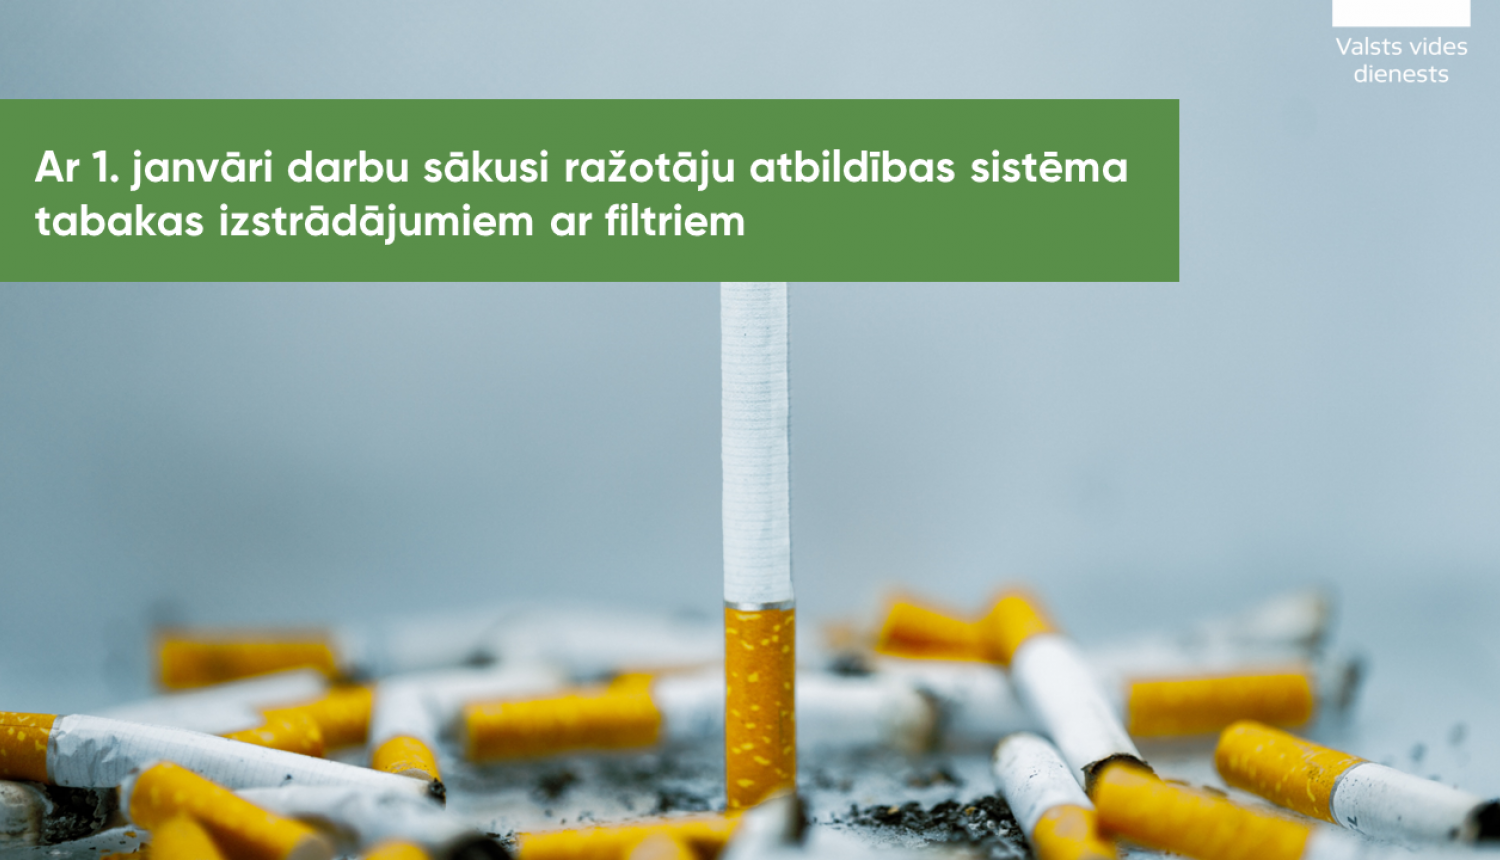 Tagad par izsmēķu apsaimniekošanu atbildīgs būs cigarešu ražotājs – ar 1. janvāri darbu sākusi ražotāju atbildības sistēma tabakas izstrādājumiem ar filtriem